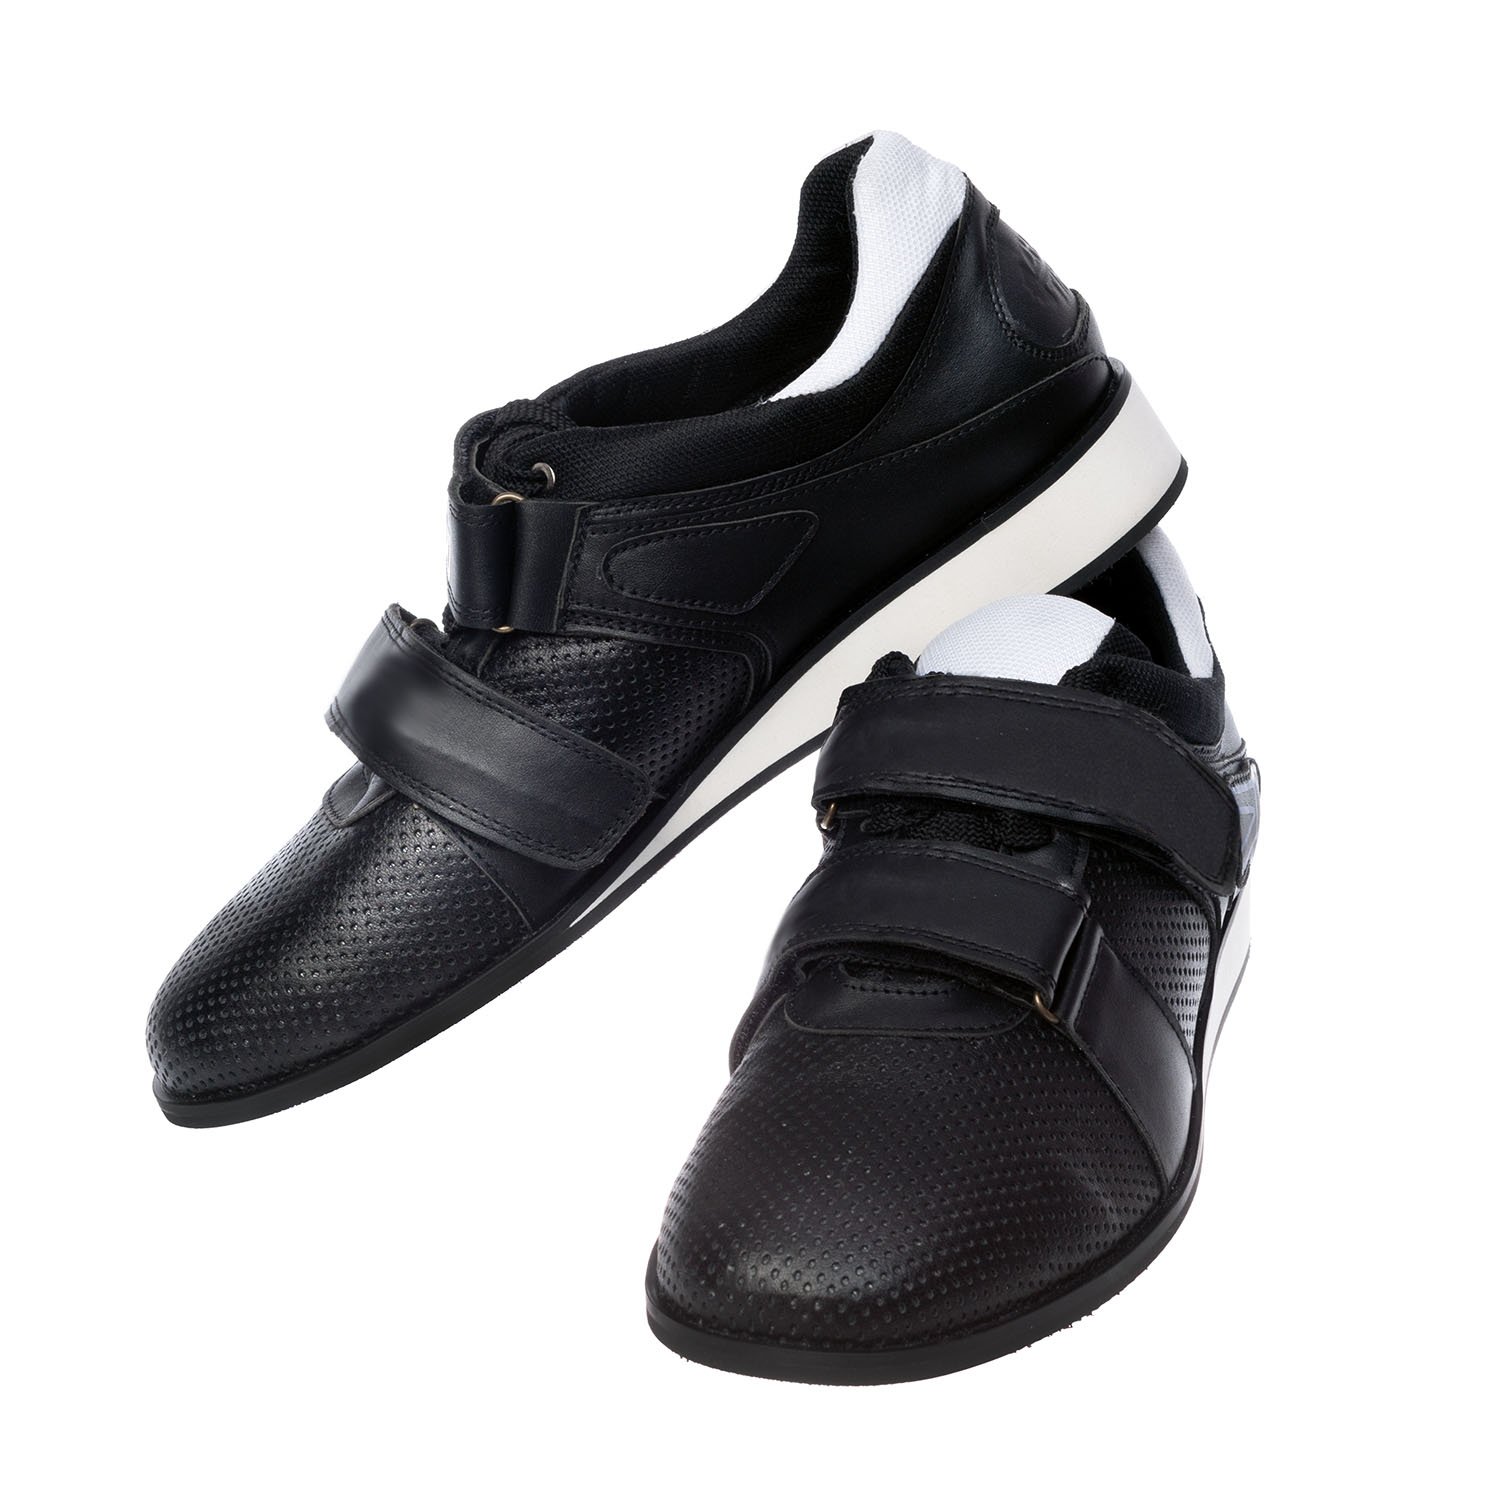 Weightlifting shoes Zhabotinsky Classic, black, size 37 (UKR)